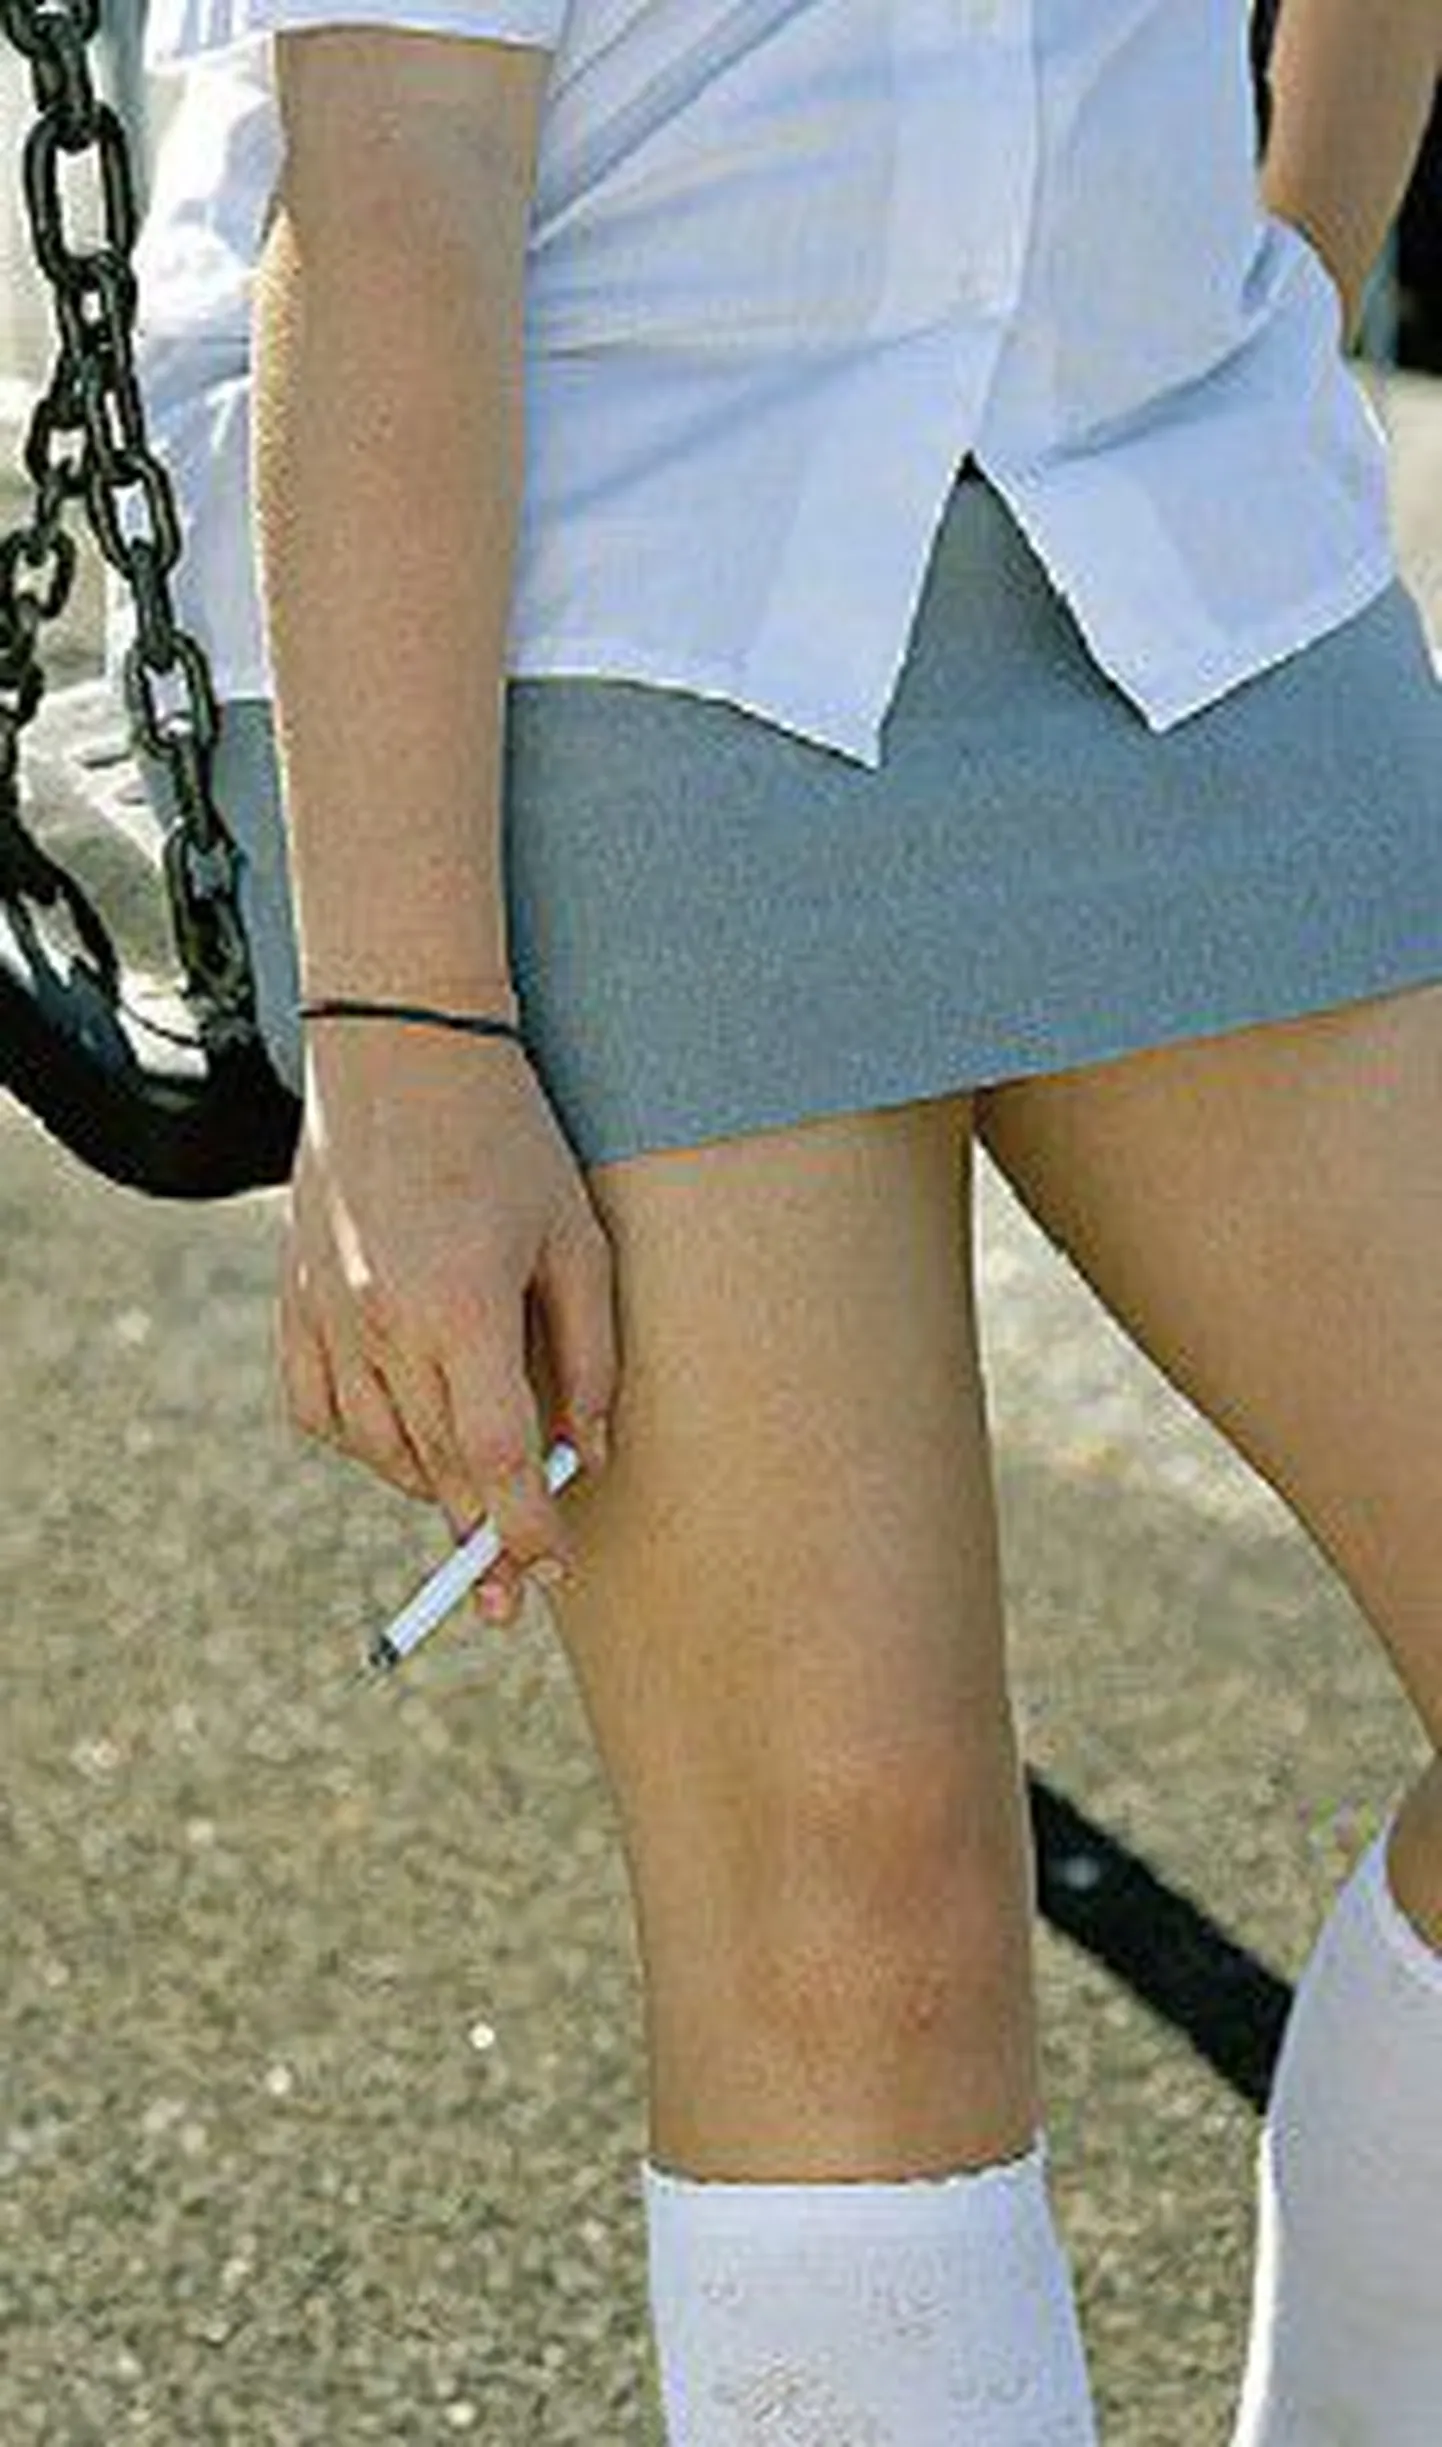 Женщины больше, чем мужчины, рискуют располнеть во взрослом возрасте, если в молодости они курили.